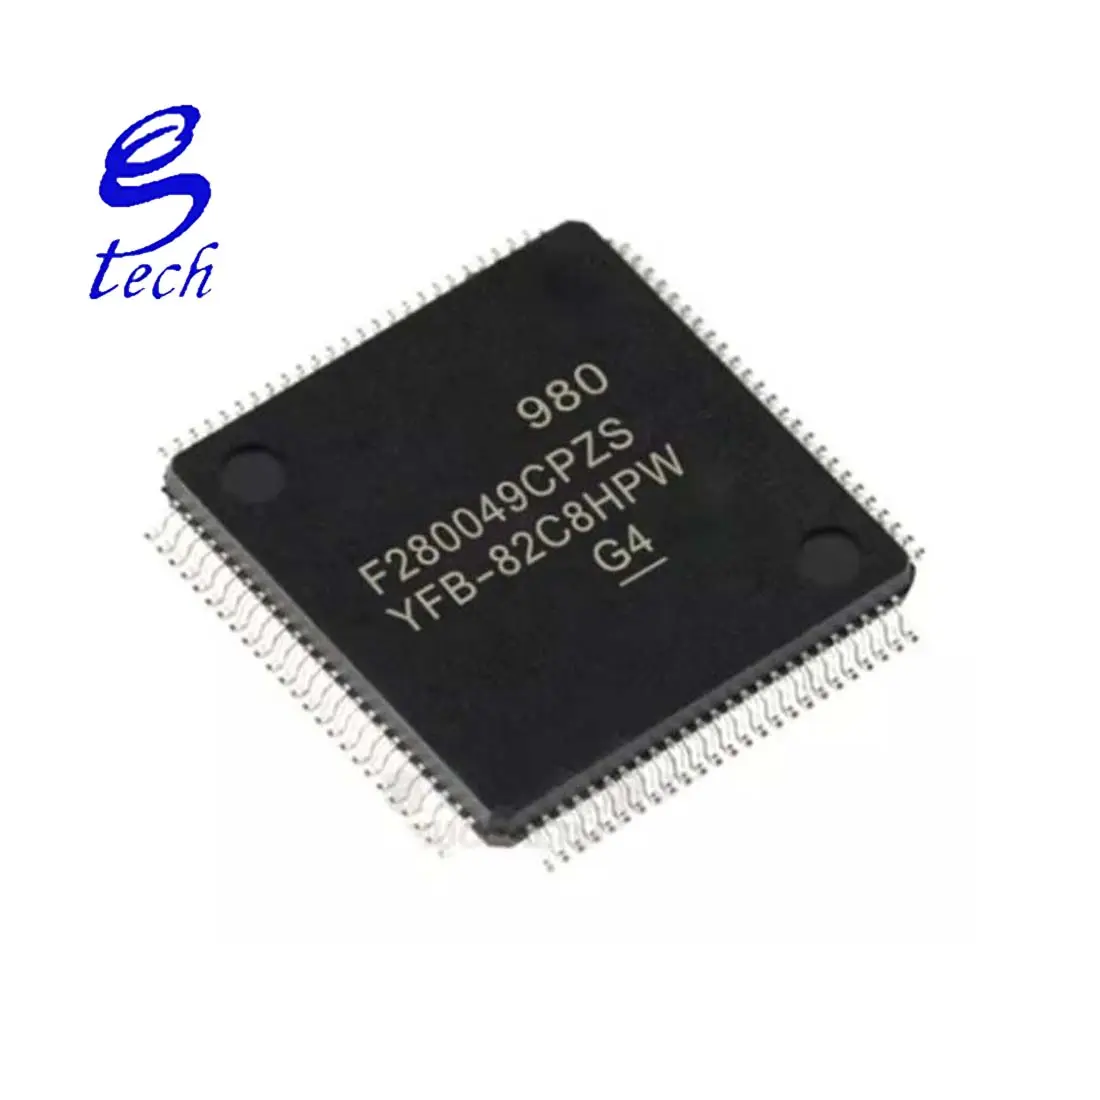 F280049CPZS Neue und originale elektronische Hochgeschwindigkeits-Komponenten für integrierte Schaltkreise bester Qualität IC F280049CPZS